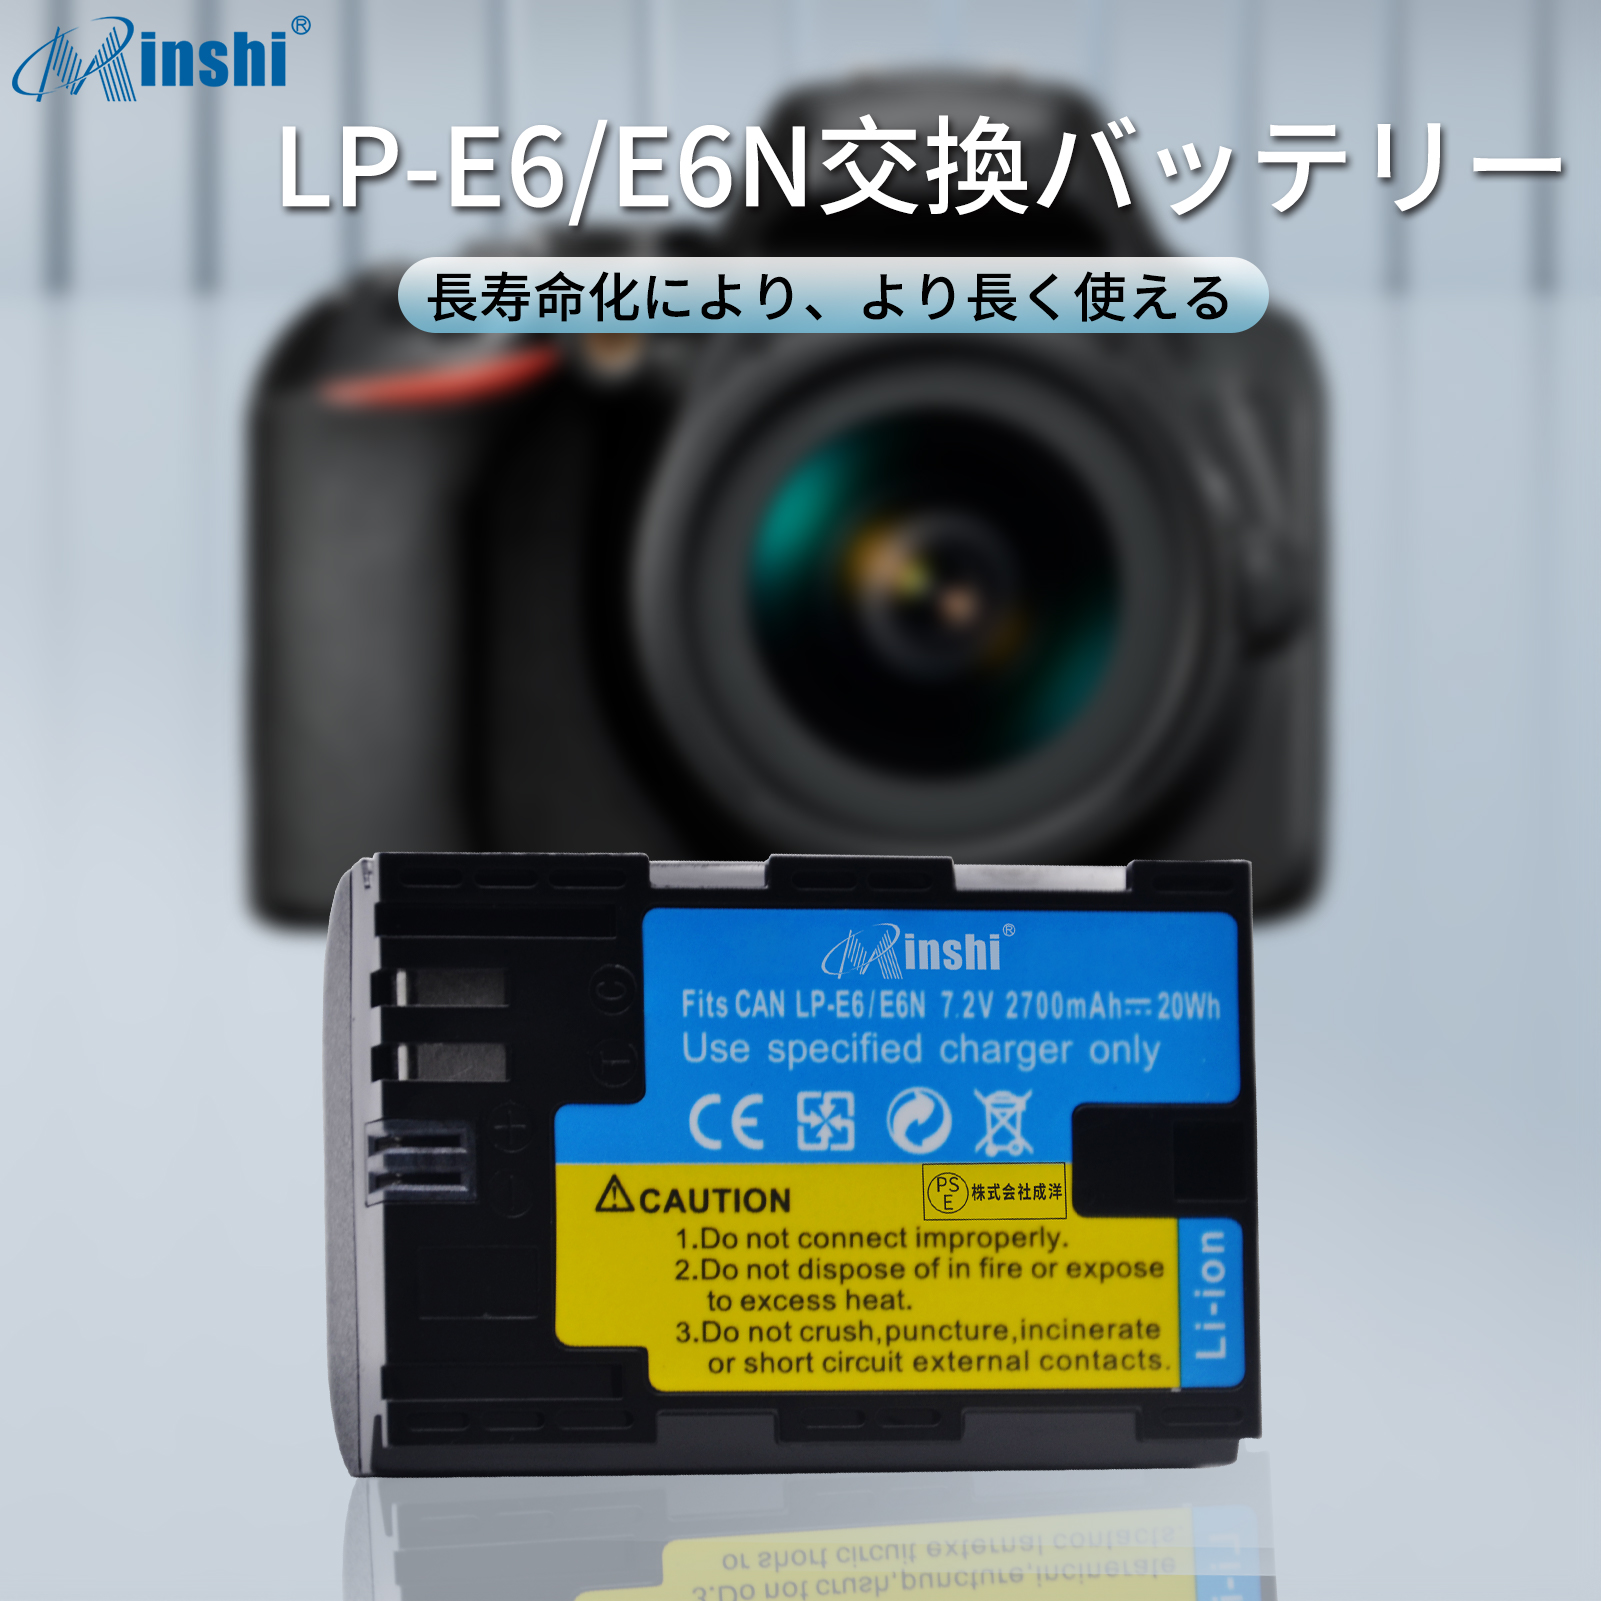 限定特価限定特価minshi Canon EOS 60Da LP-E6 LP-E6NH LP-E6N EOS6D